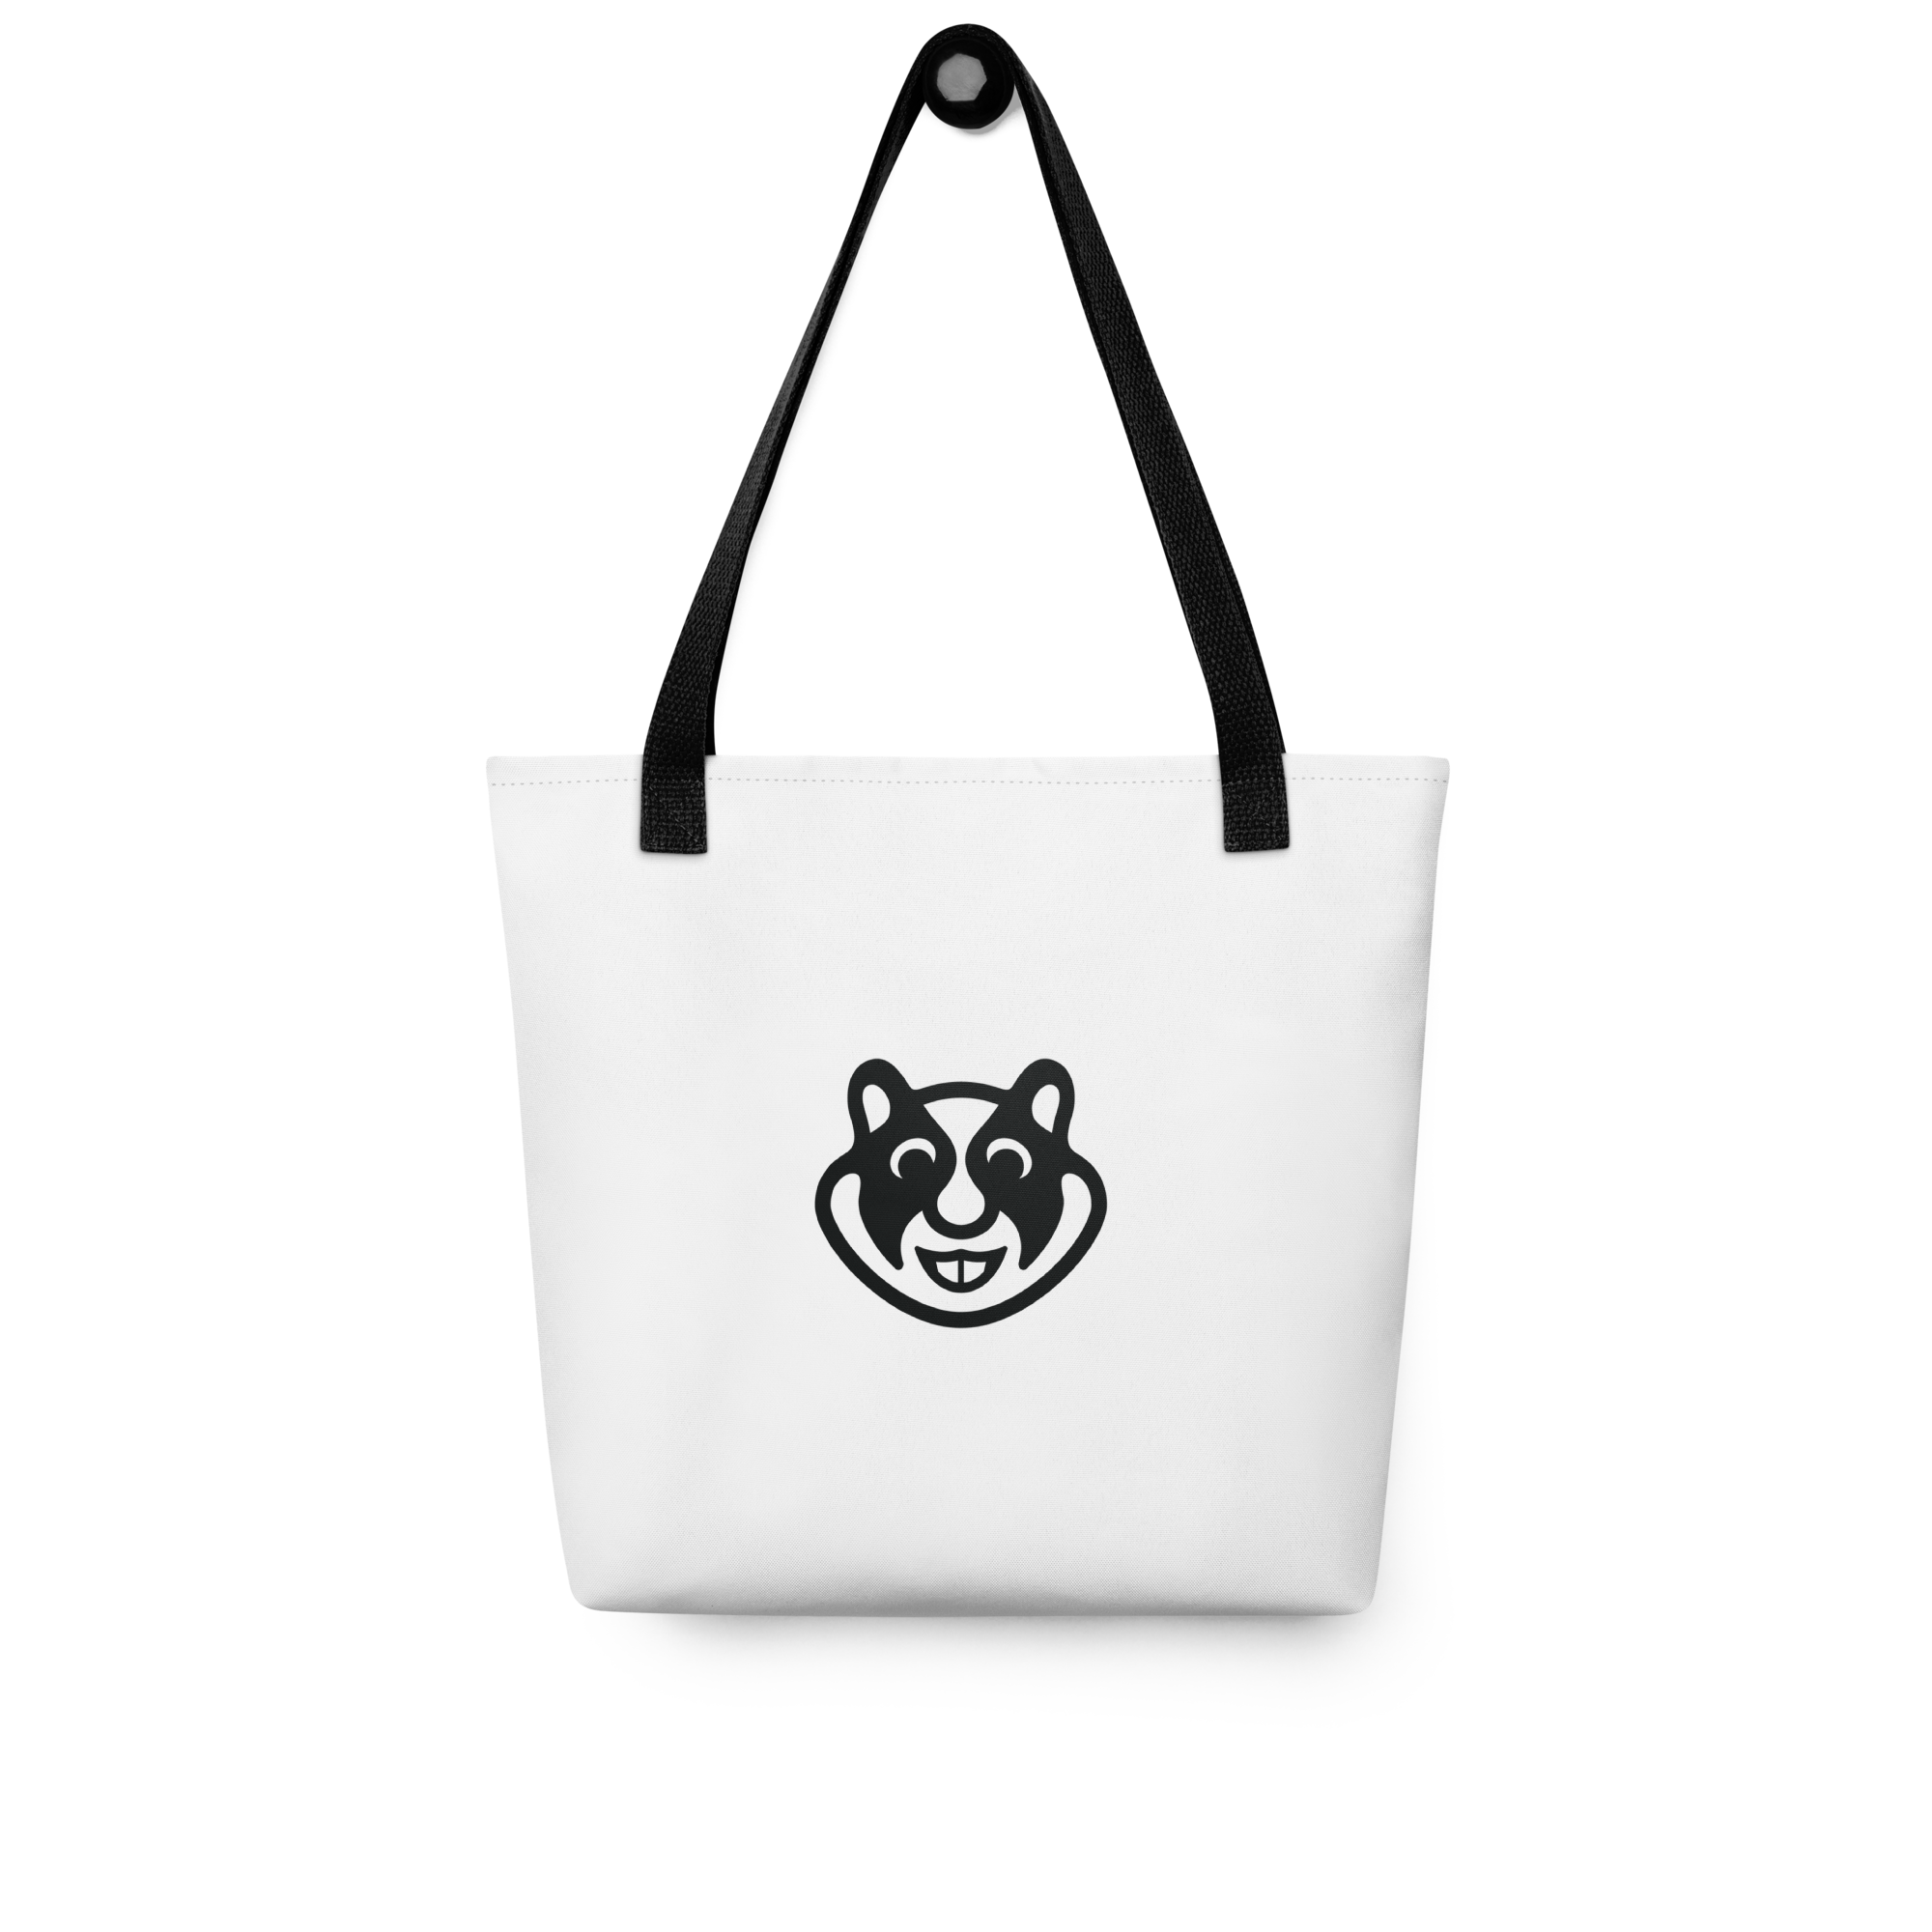 xHamster Tote Bag White (Mascot)